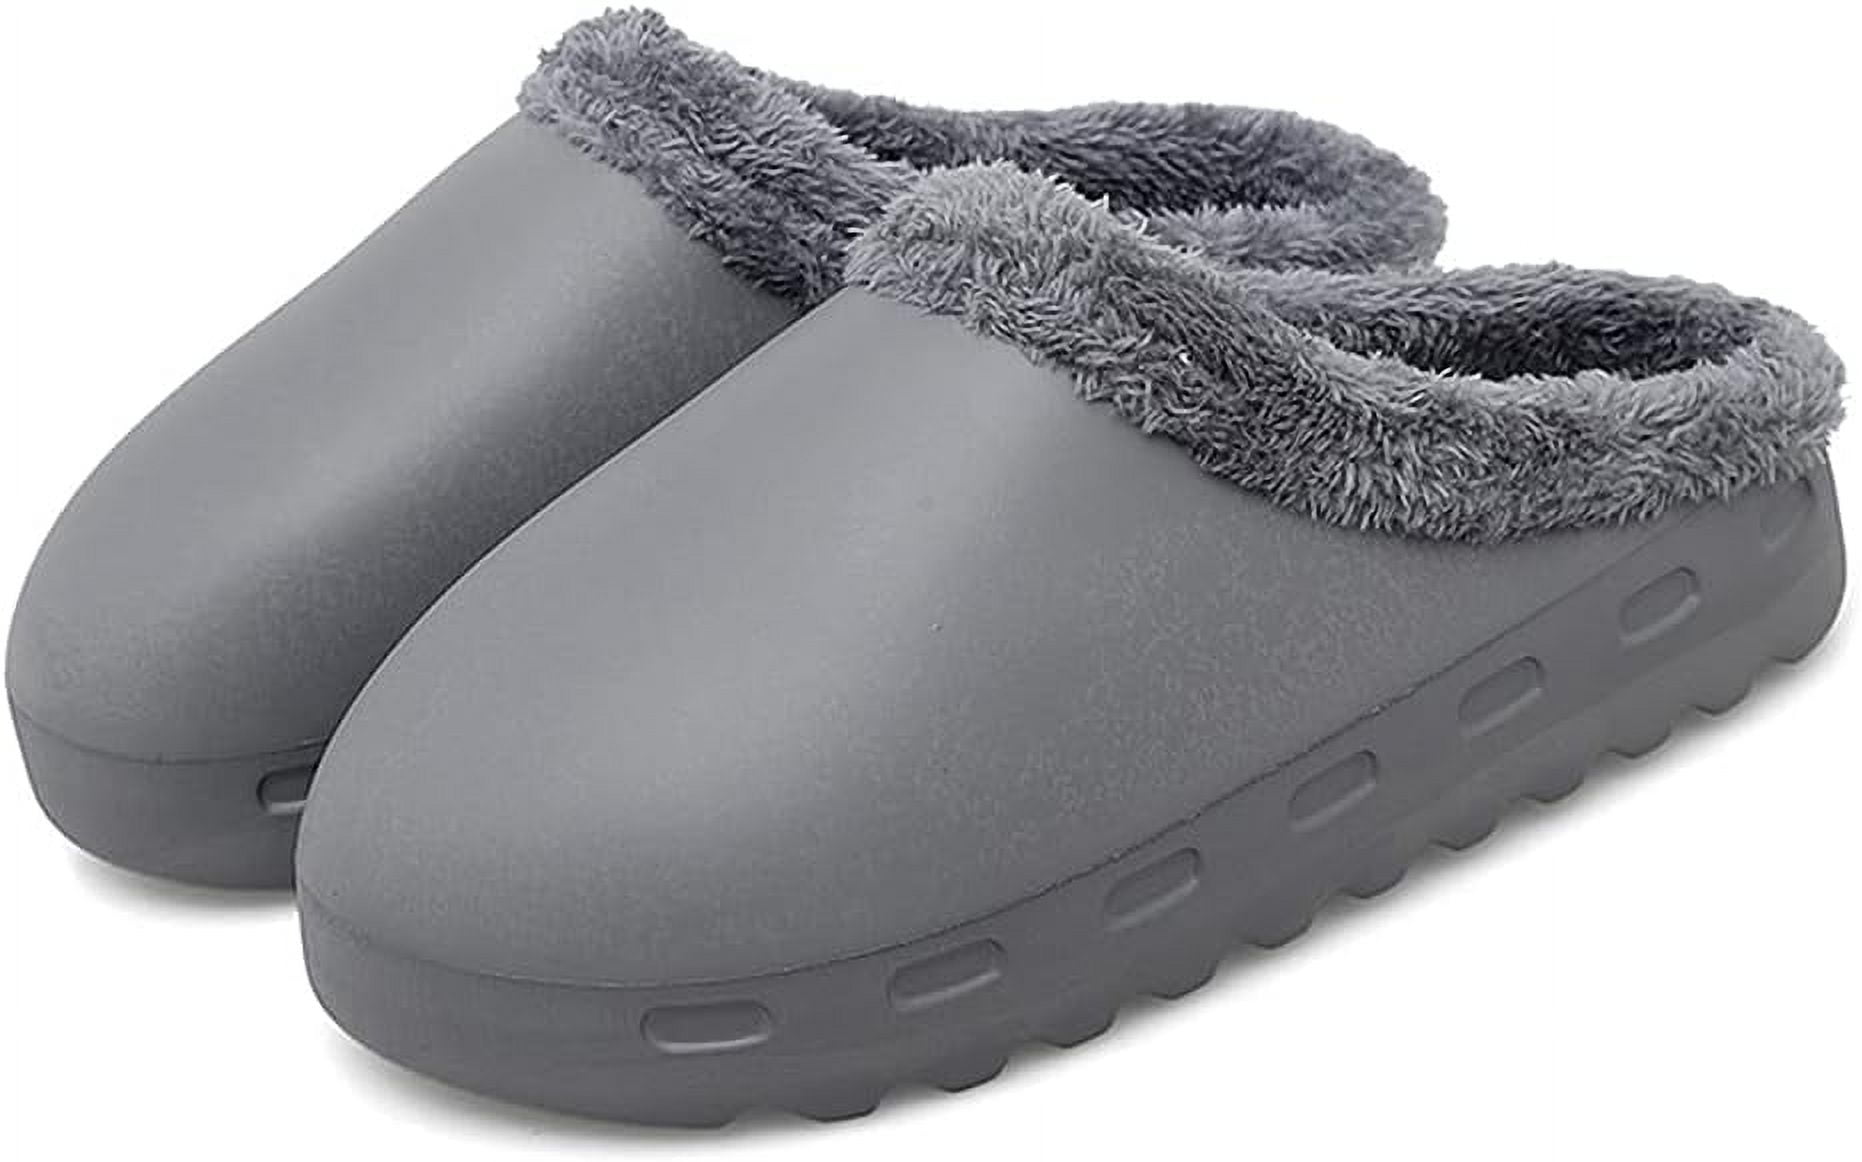 Slippers for Woman Mens Indoor Outdoor EVA Waterproof Fur Lined Clog ...